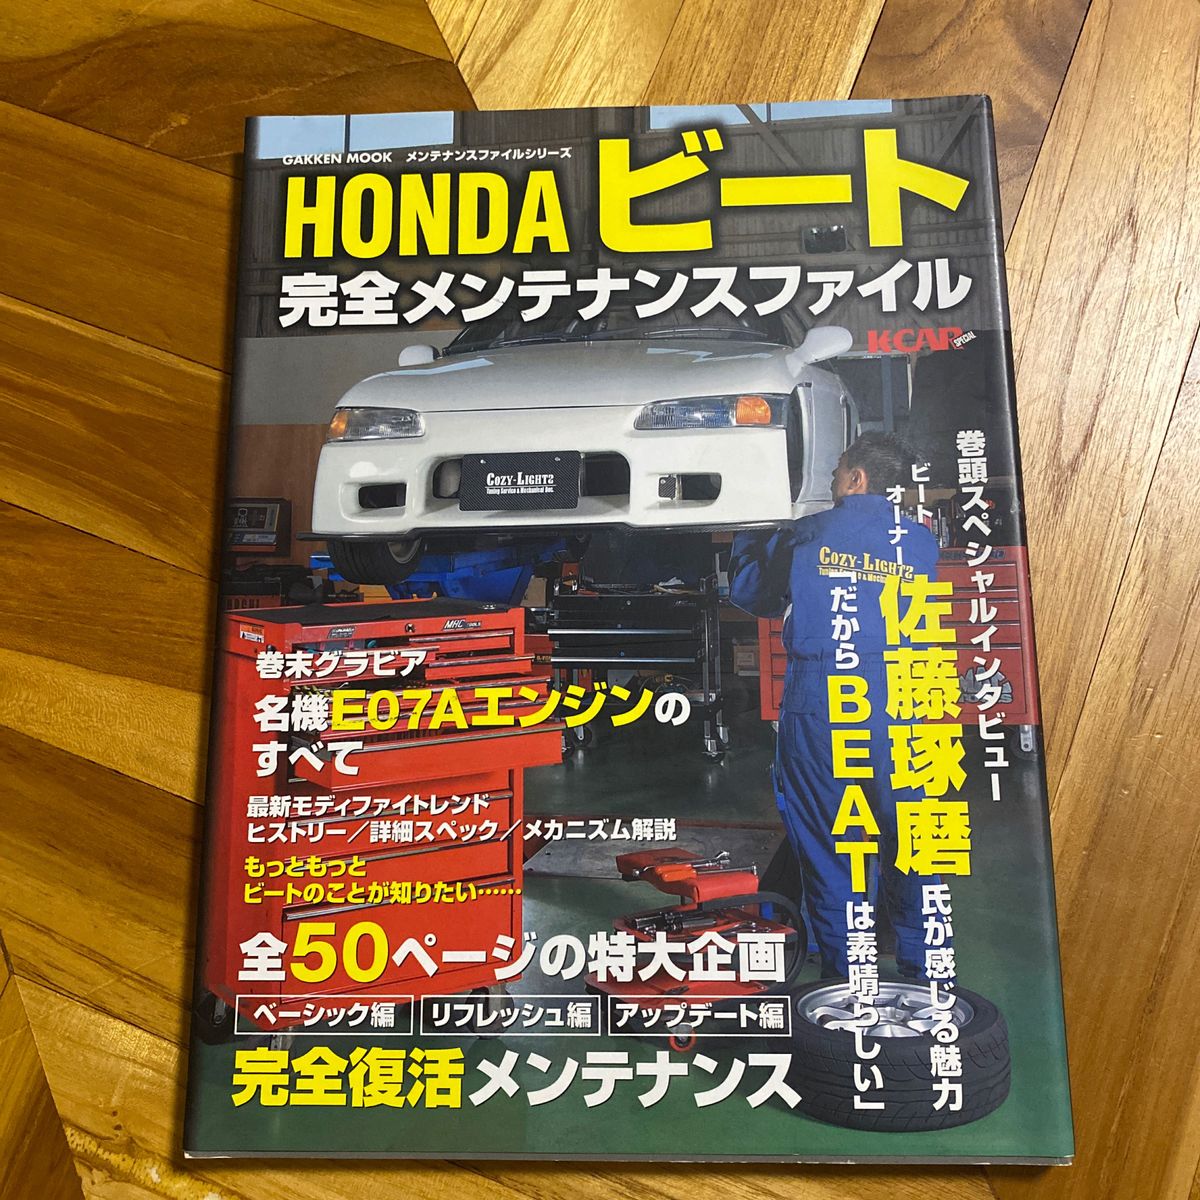 Hondaビート完全メンテナンスファイル - 趣味